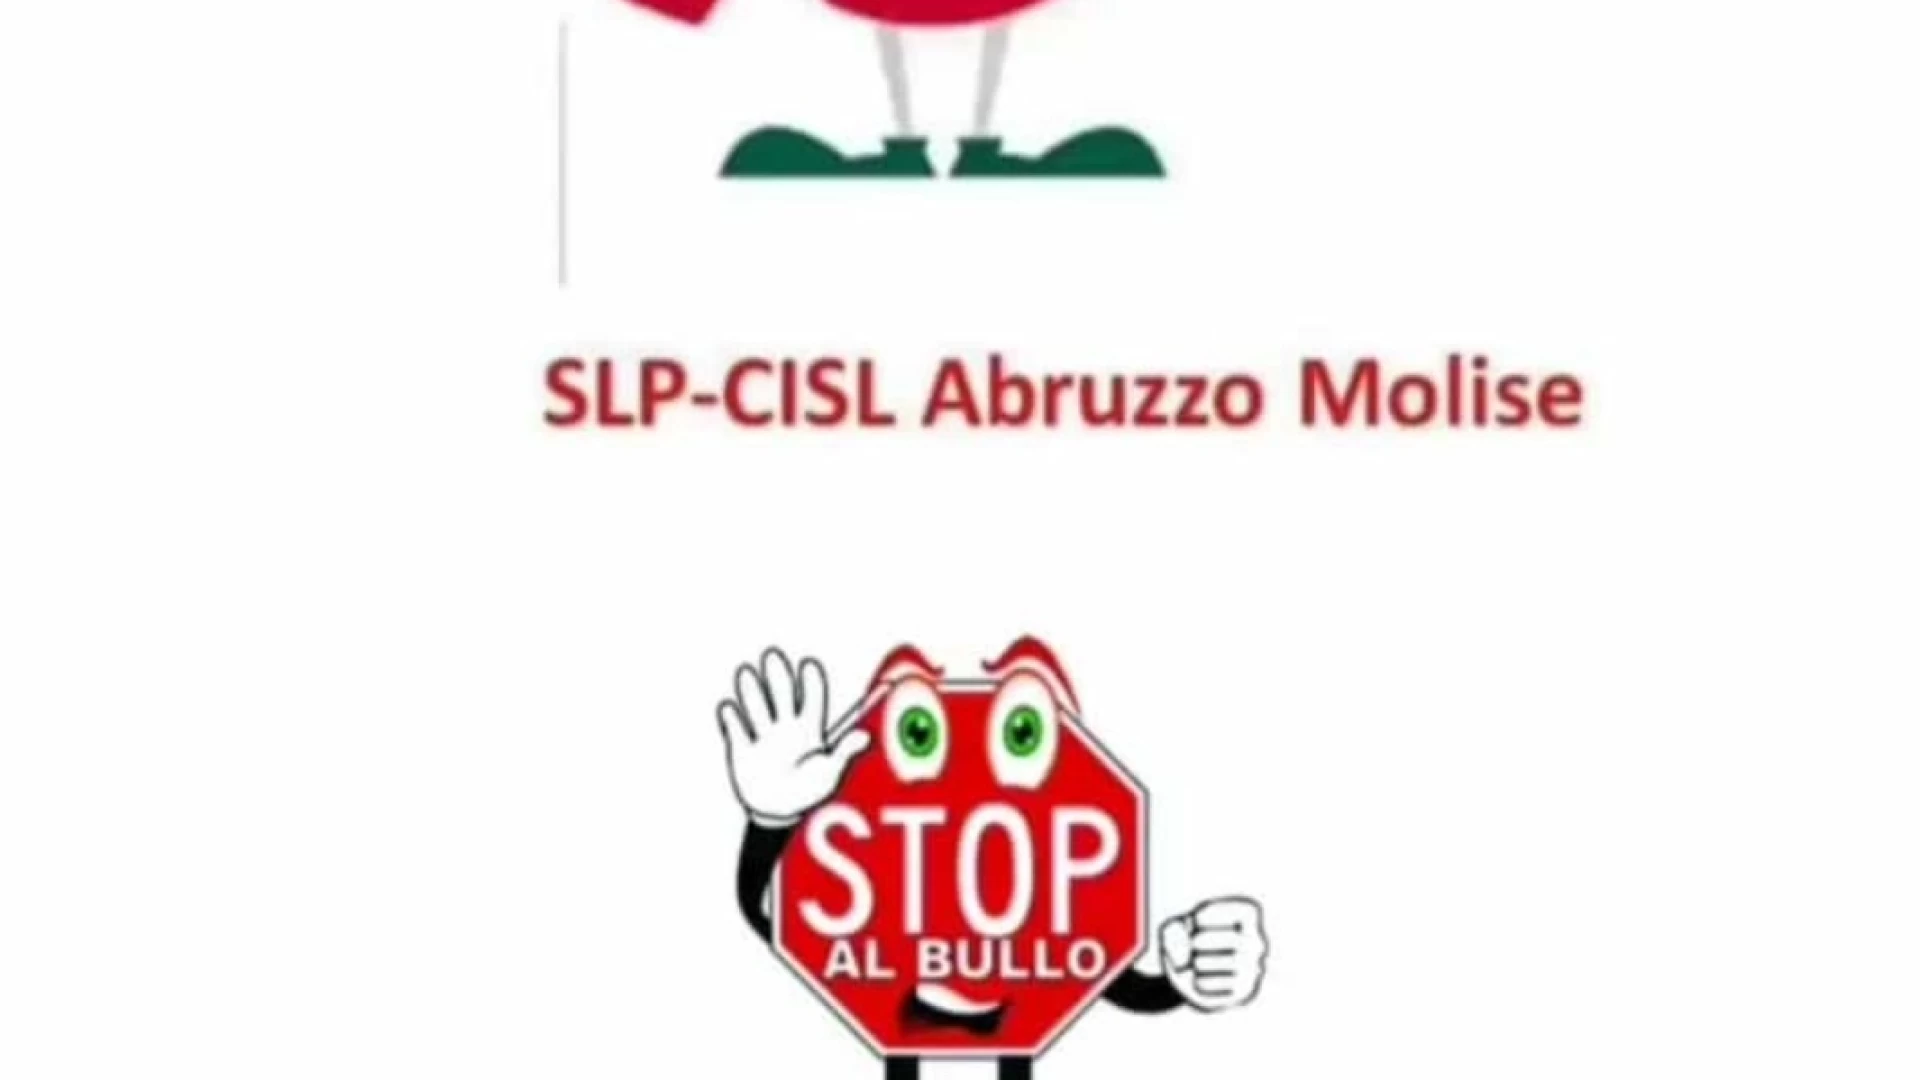 Cisl Slp Abruzzo Molise e “Stop Bullismo Odv” insieme per dire “no” al bullismo.